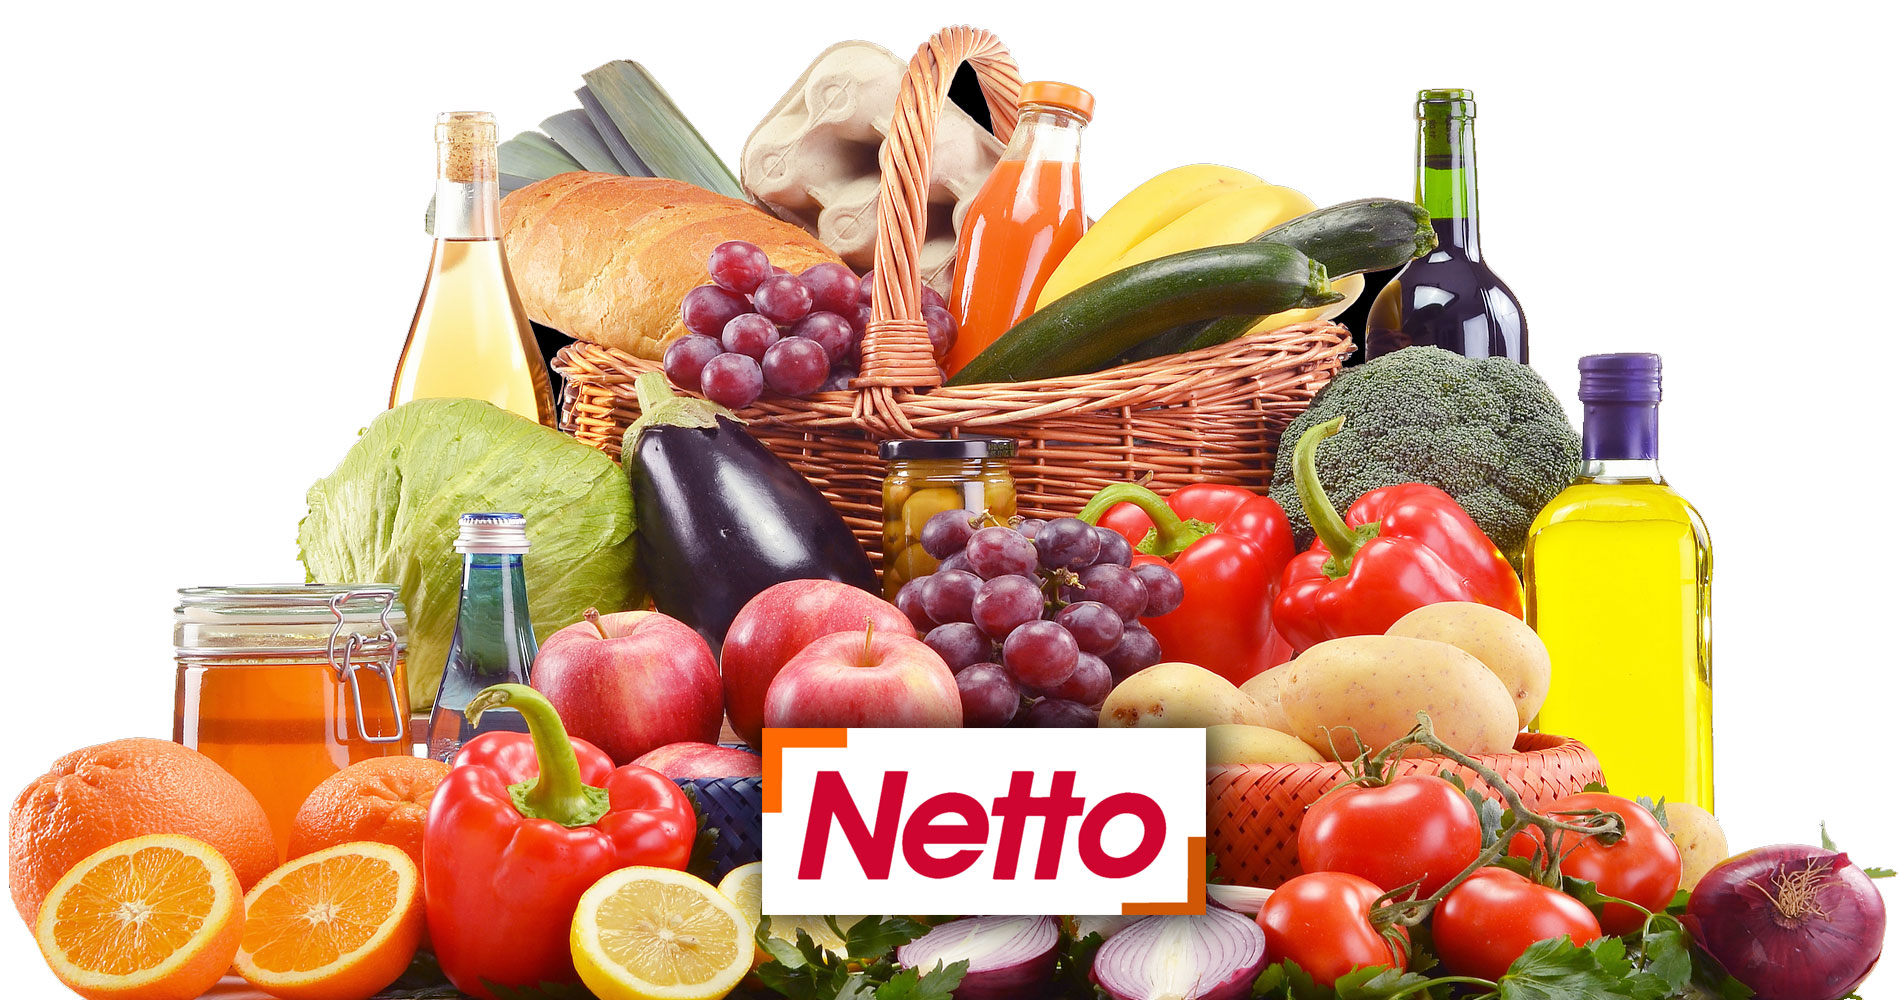 voir les magasins de discount alimentaire Netto en France